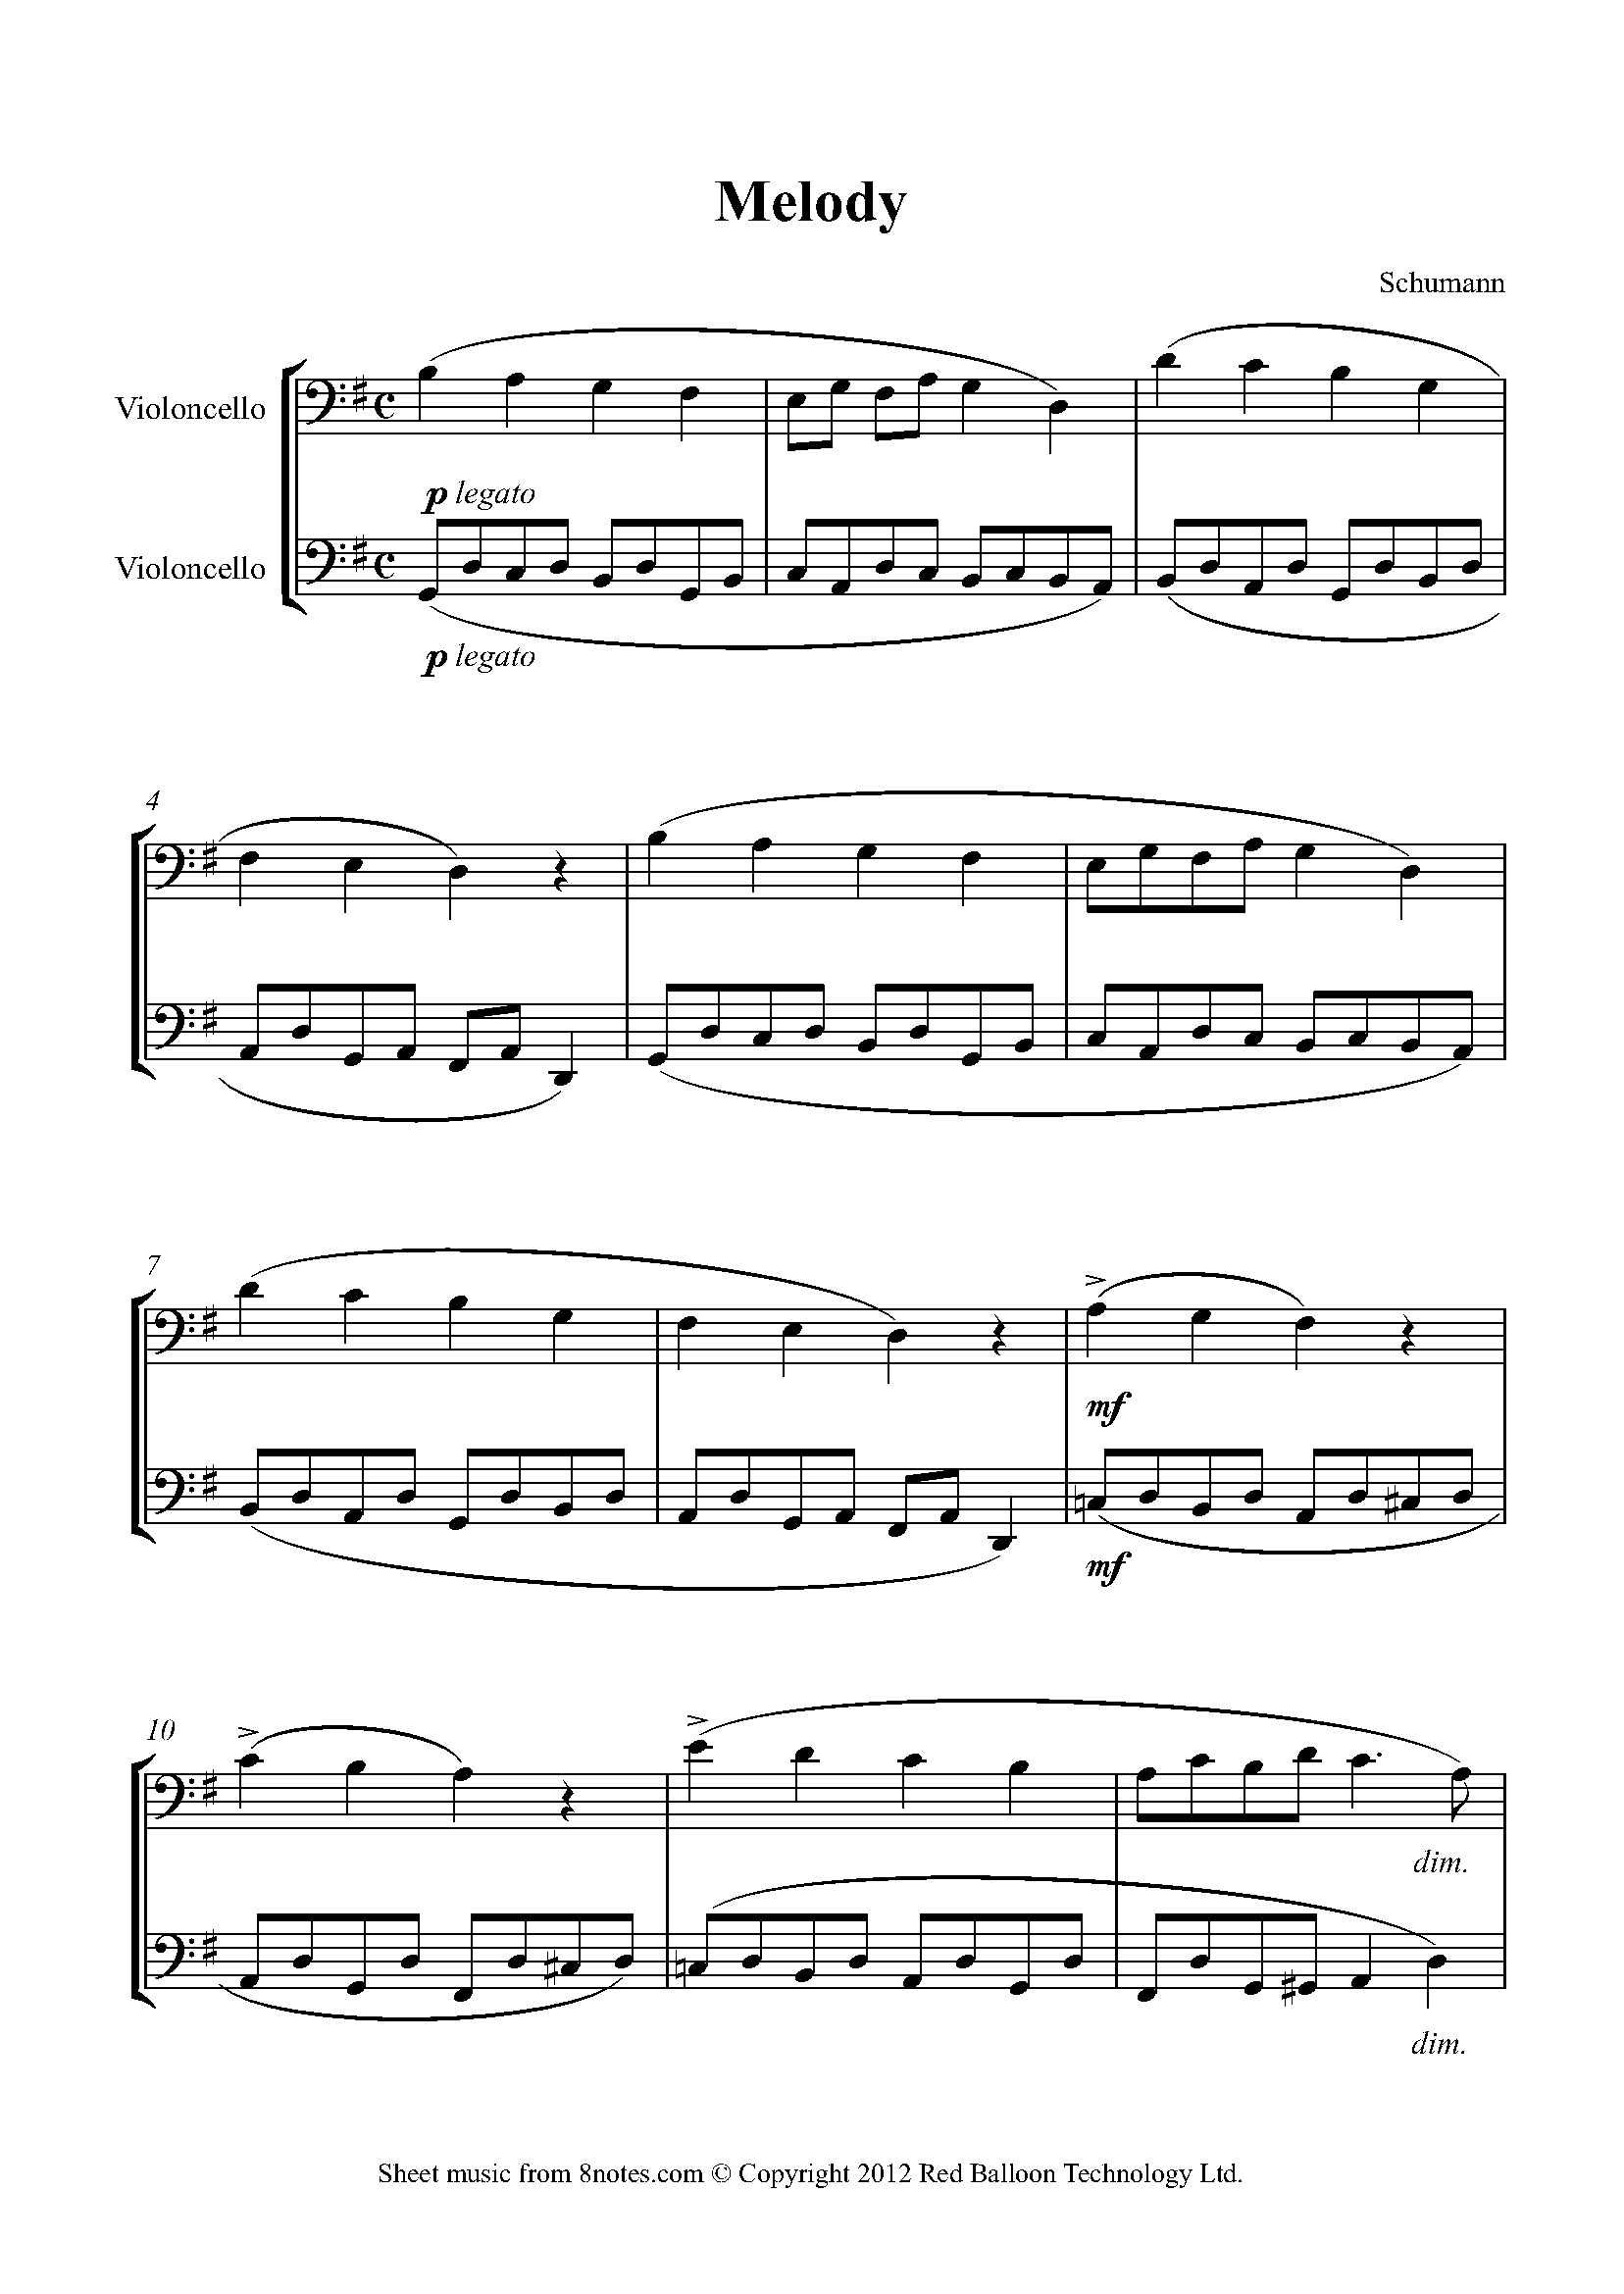 https://www.8notes.com/school/png/cello_duet/schumann_melodyVLCduet001.png